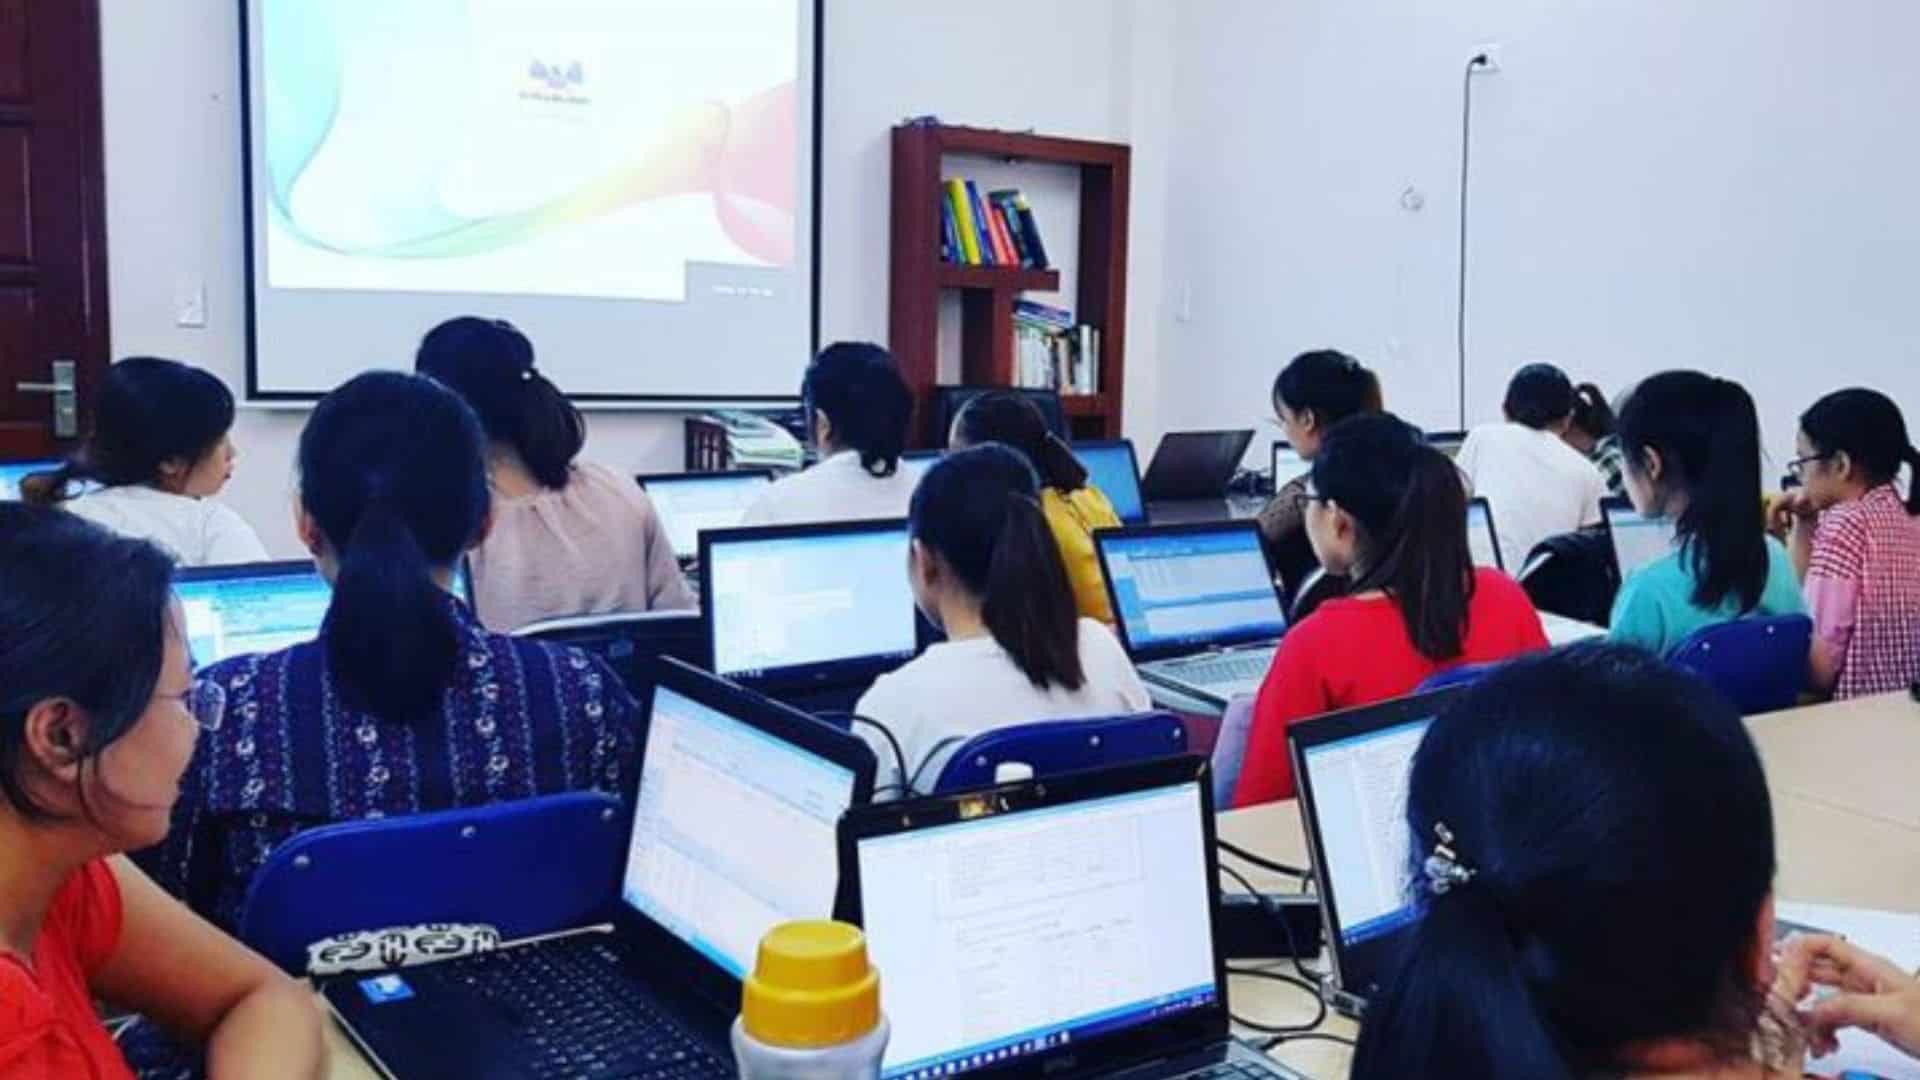 Sáng Nguyễn - Dịch vụ kế toán Đà Nẵng chuyên nghiệp